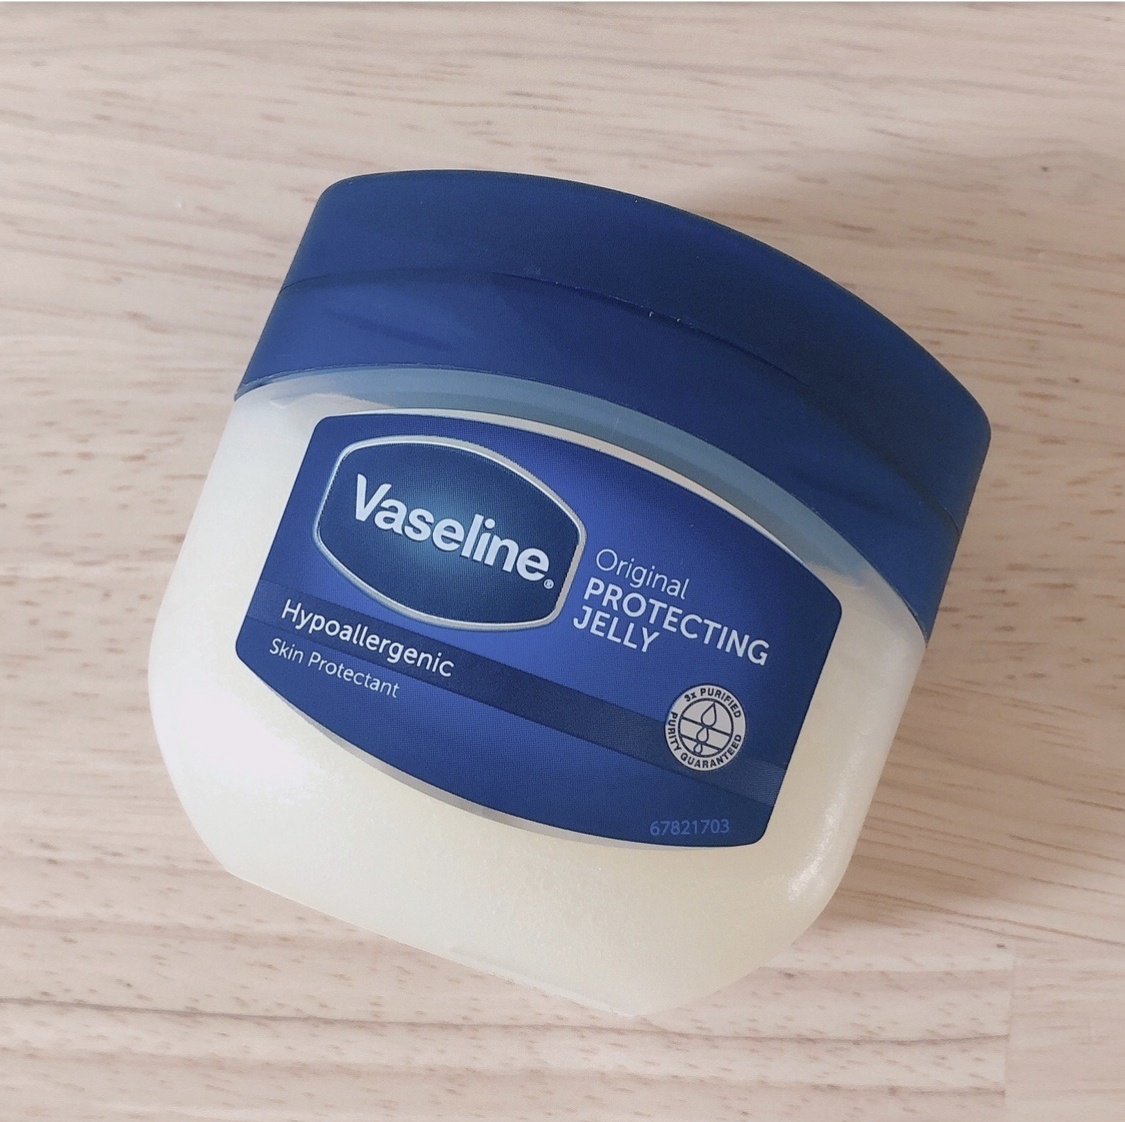 Vaseline(ヴァセリン) オリジナル ピュアスキンジェリーの良い点・メリットに関するみーさん¨̮⸝⋆さんの口コミ画像1